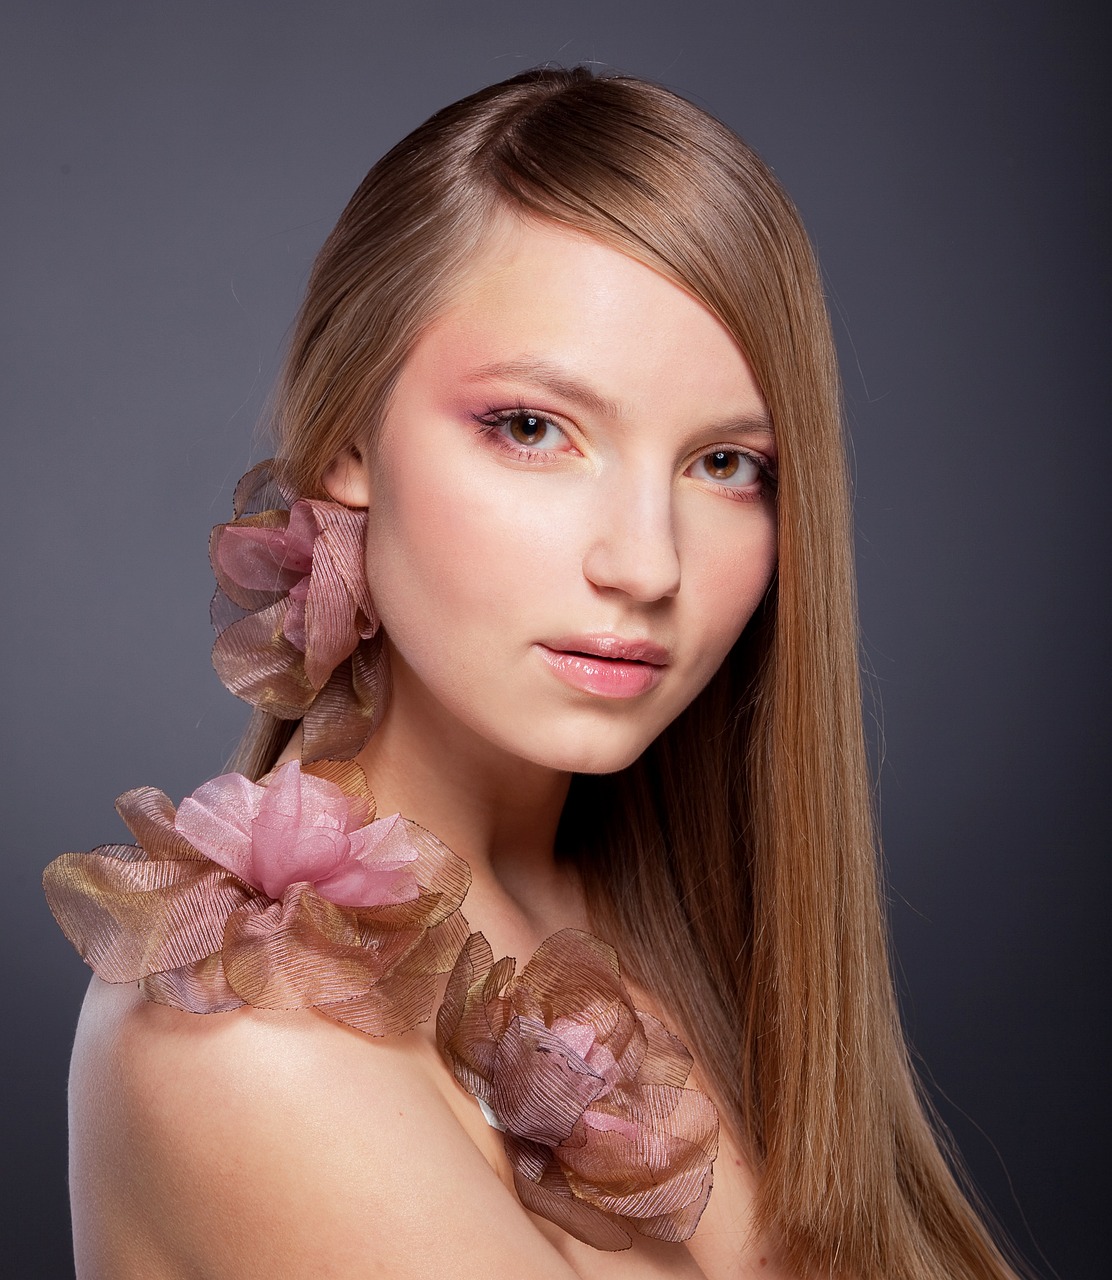 Maquillage rose : Les meilleures astuces pour un look romantique et tendance en 2023